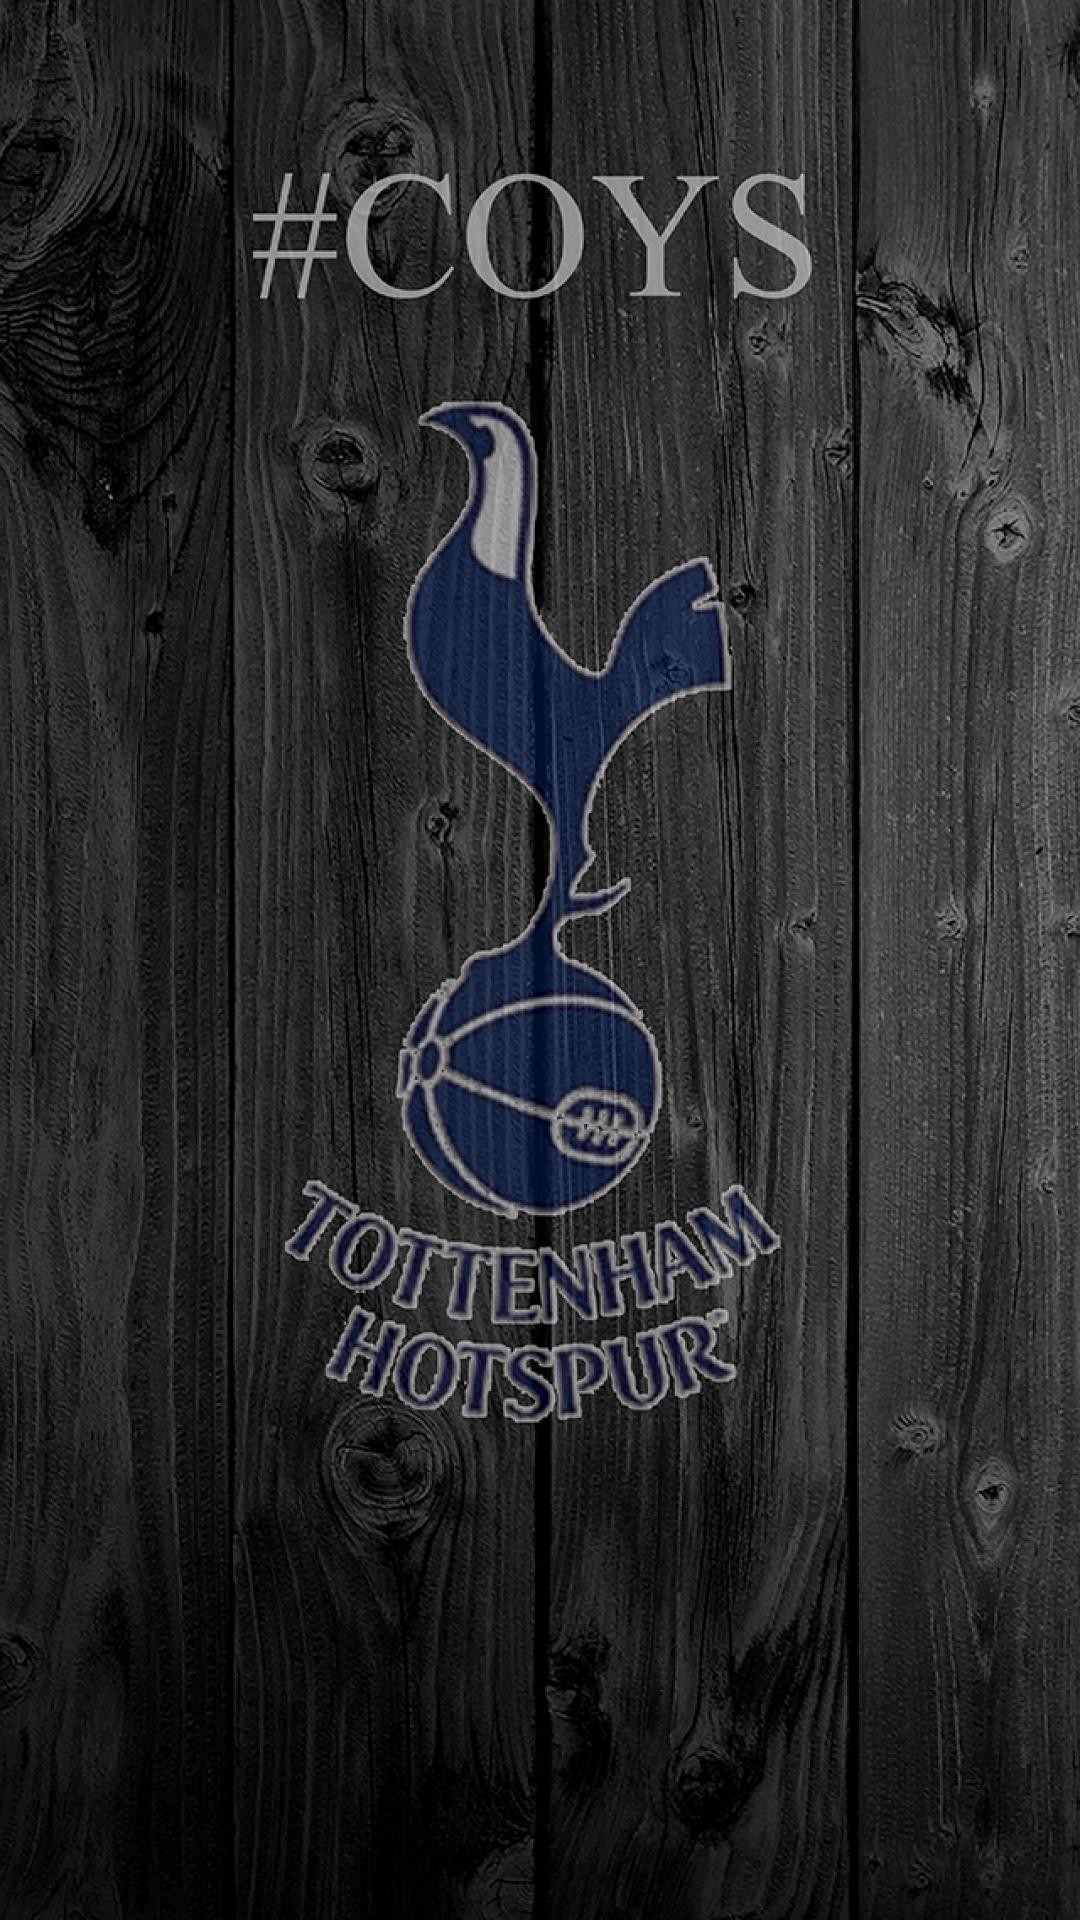 1080x1920 Premier League - Tottenham Hotspur iPhone 5 / SE Wallpaper